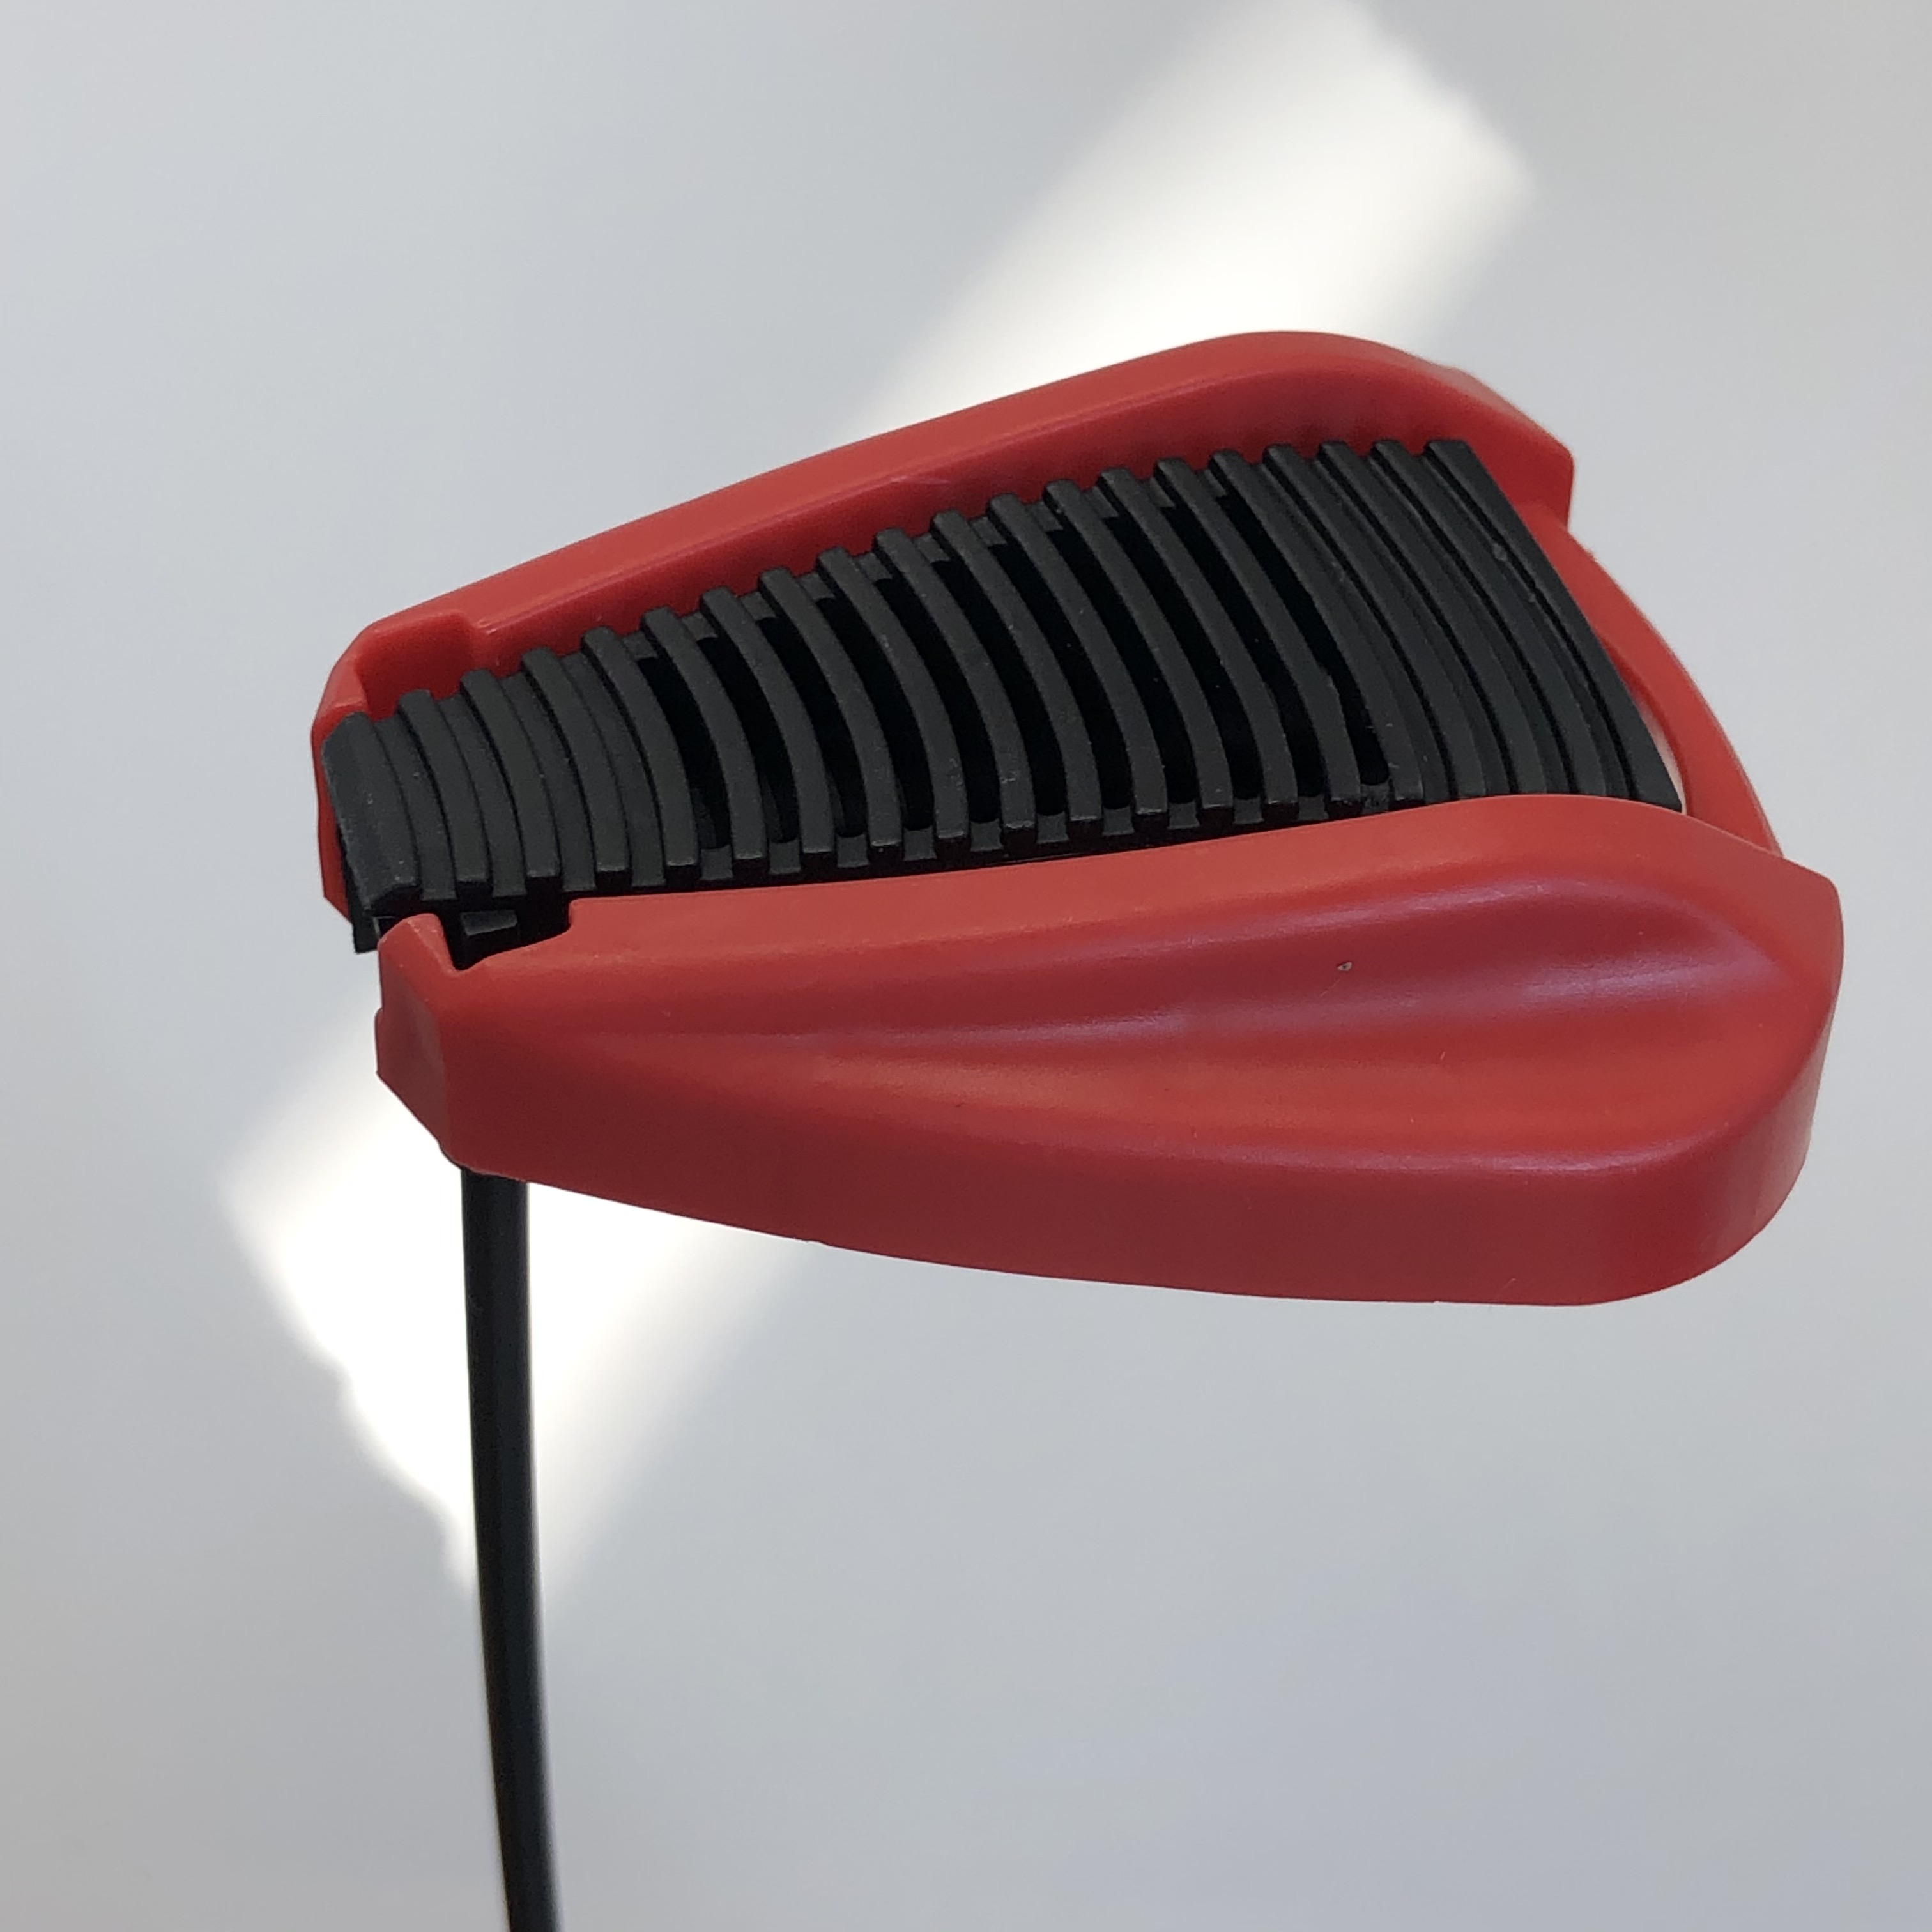 Geniş Fan Püskürtme Nozumu - Tarım ve Bahçe Uygulamaları için Geniş Kapsama Püskürtücü - 120 ° Sprey açısı